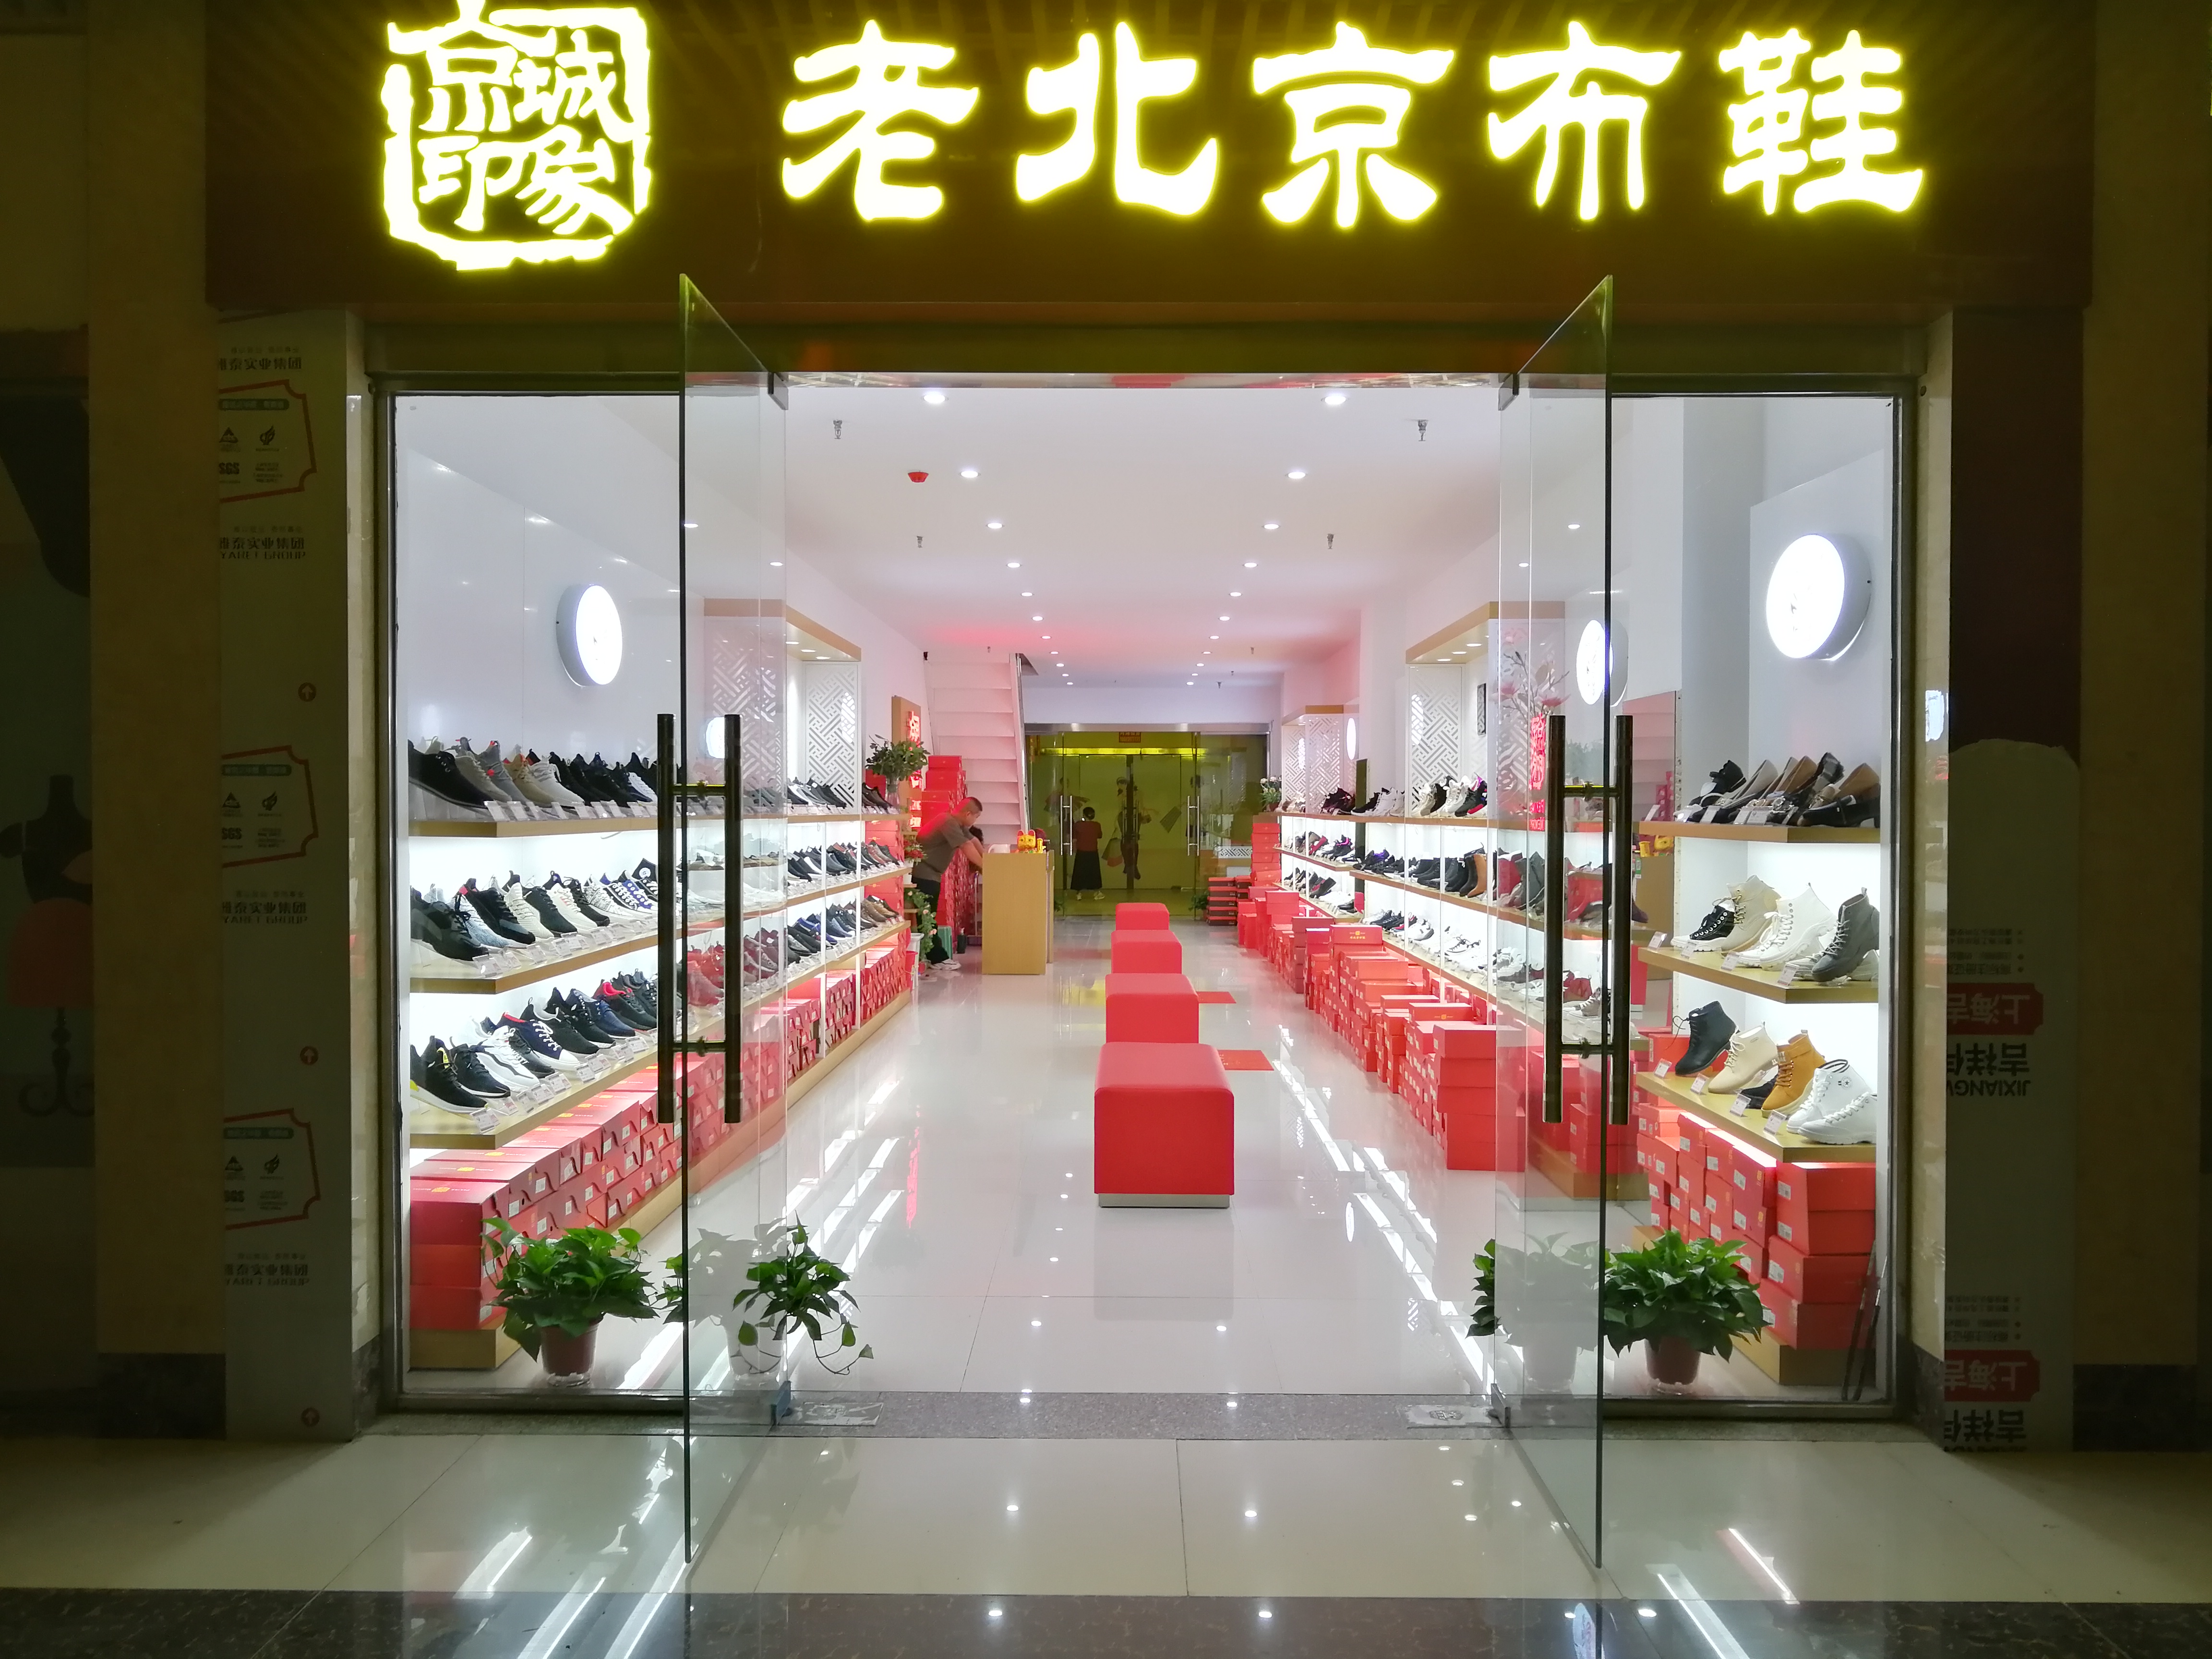 贺：京城印象老北京布鞋加盟店河南信阳冯老板盛大开业！